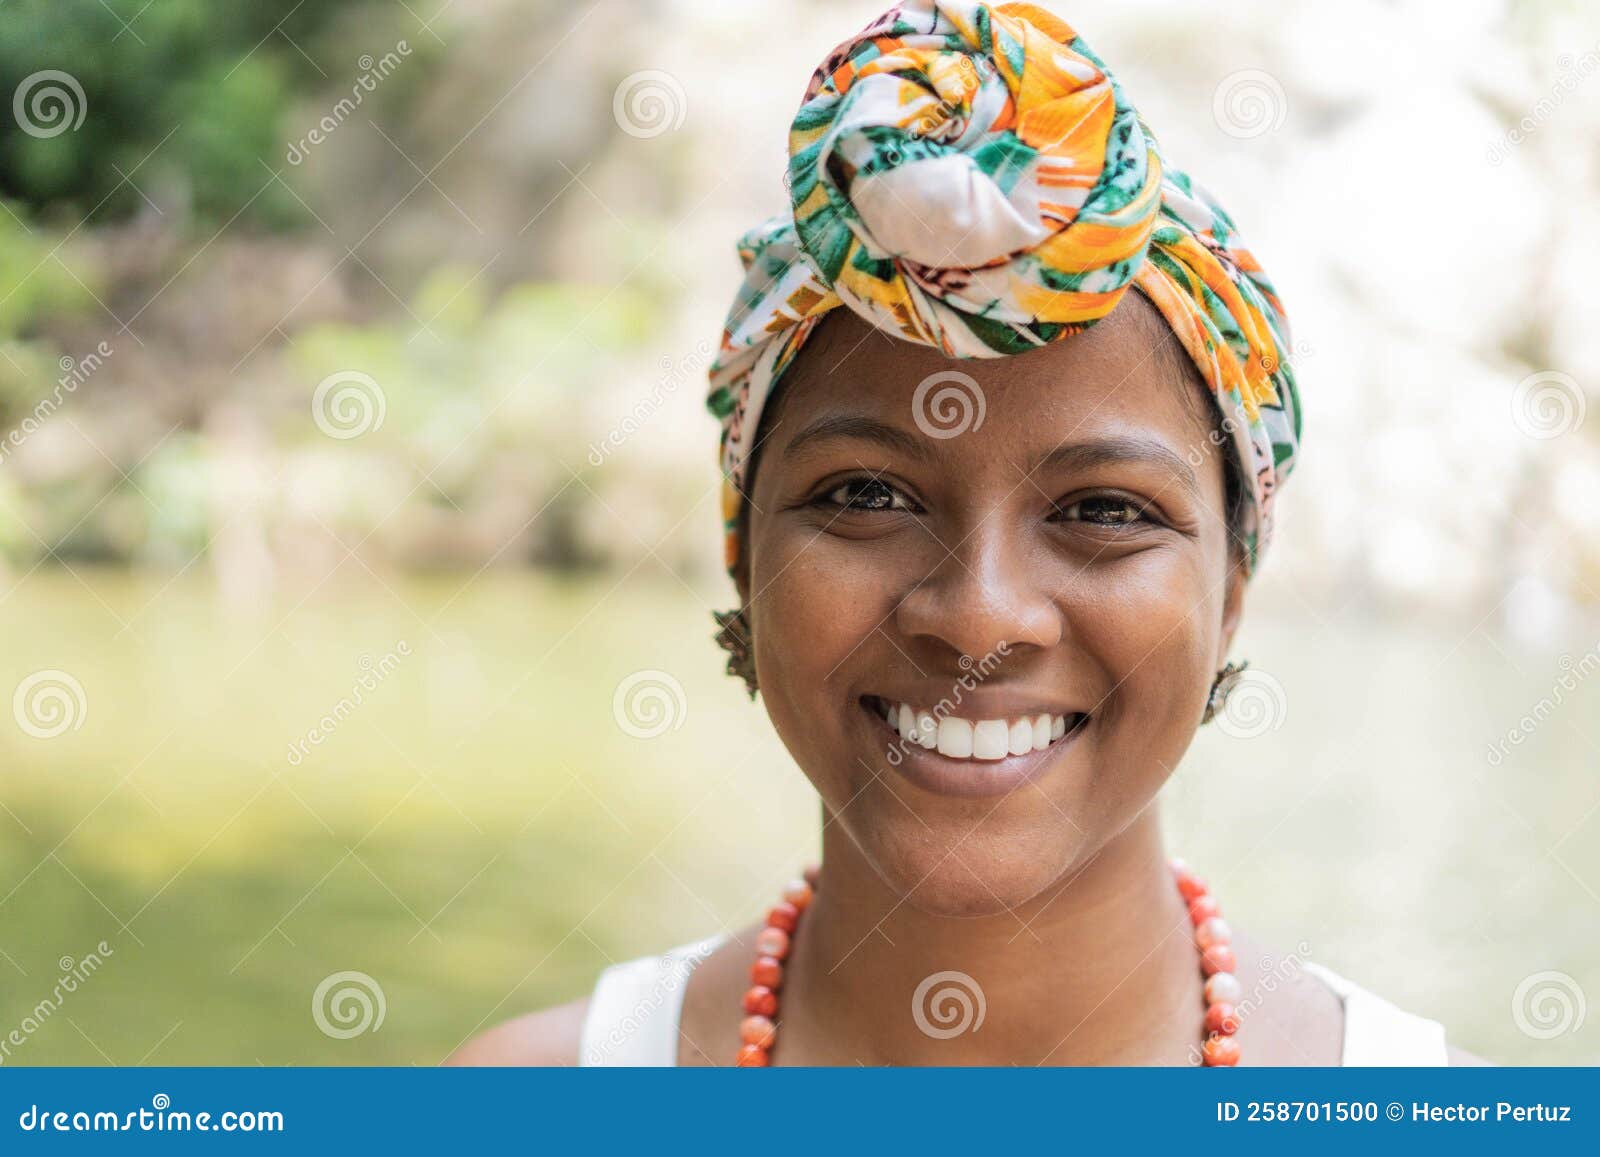 https://thumbs.dreamstime.com/z/retrato-de-uma-jovem-feliz-usando-roupa-tradicional-brasileira-258701500.jpg